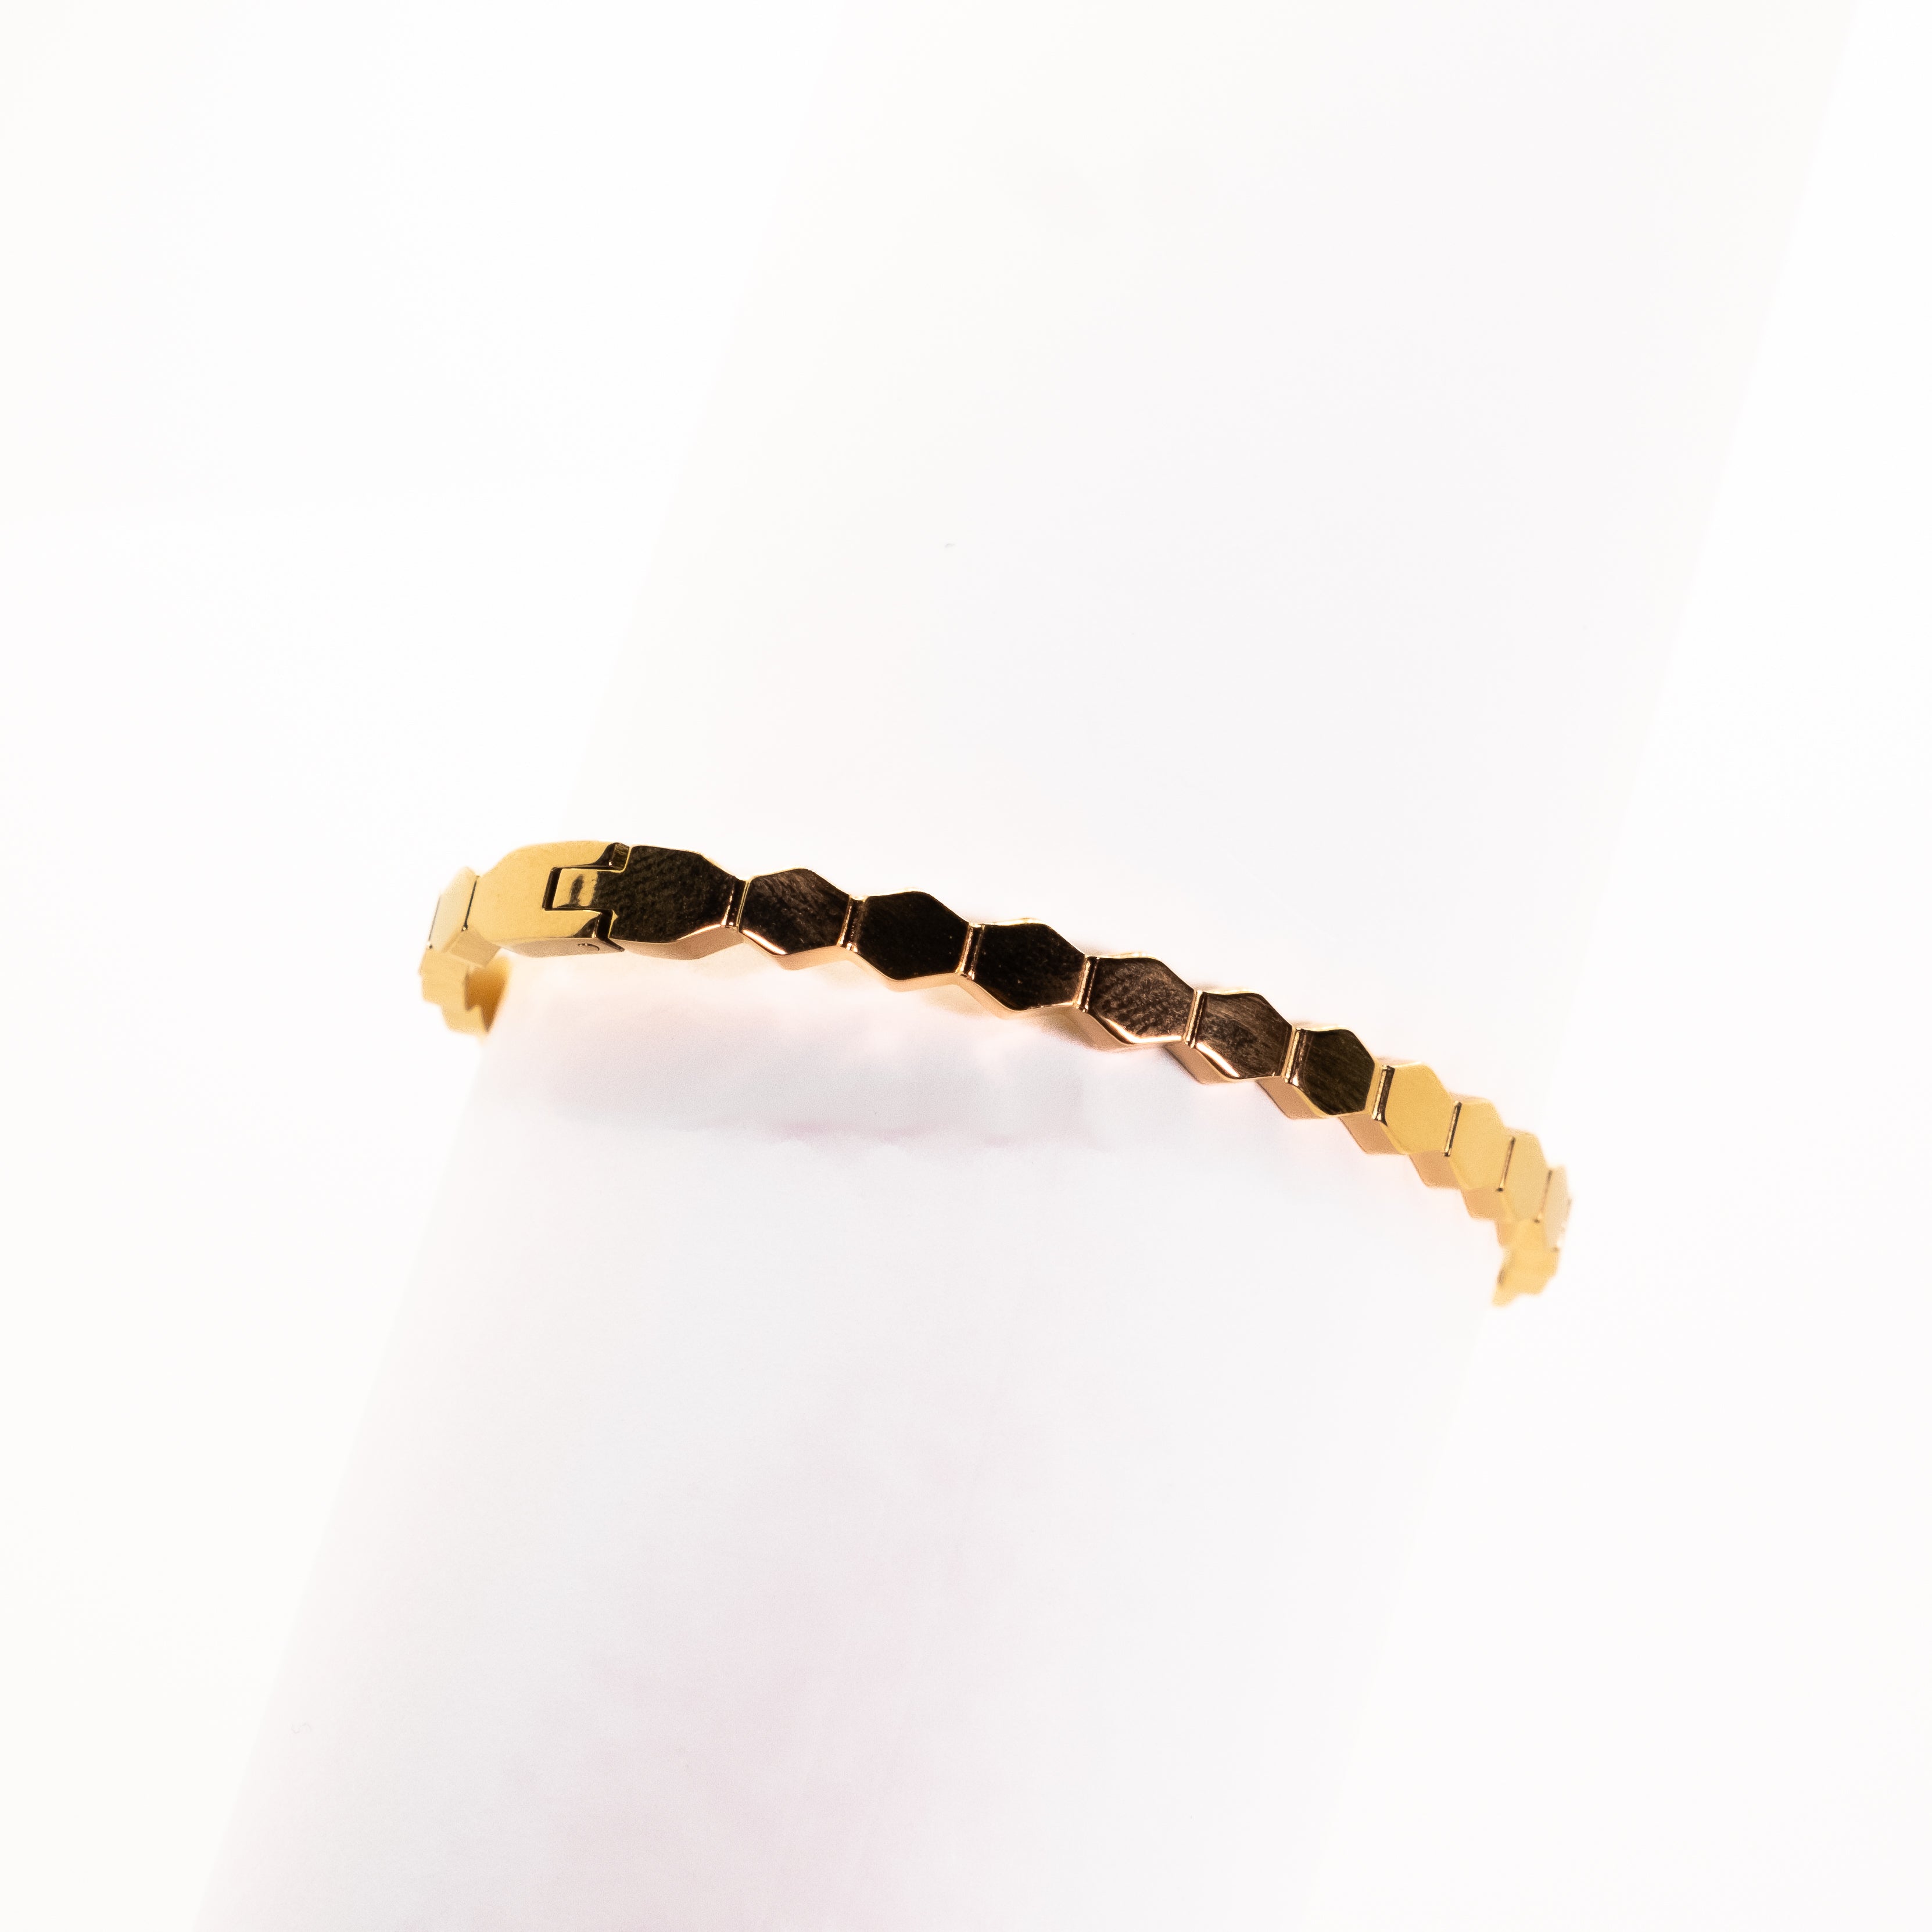 "Hive" Bracelet